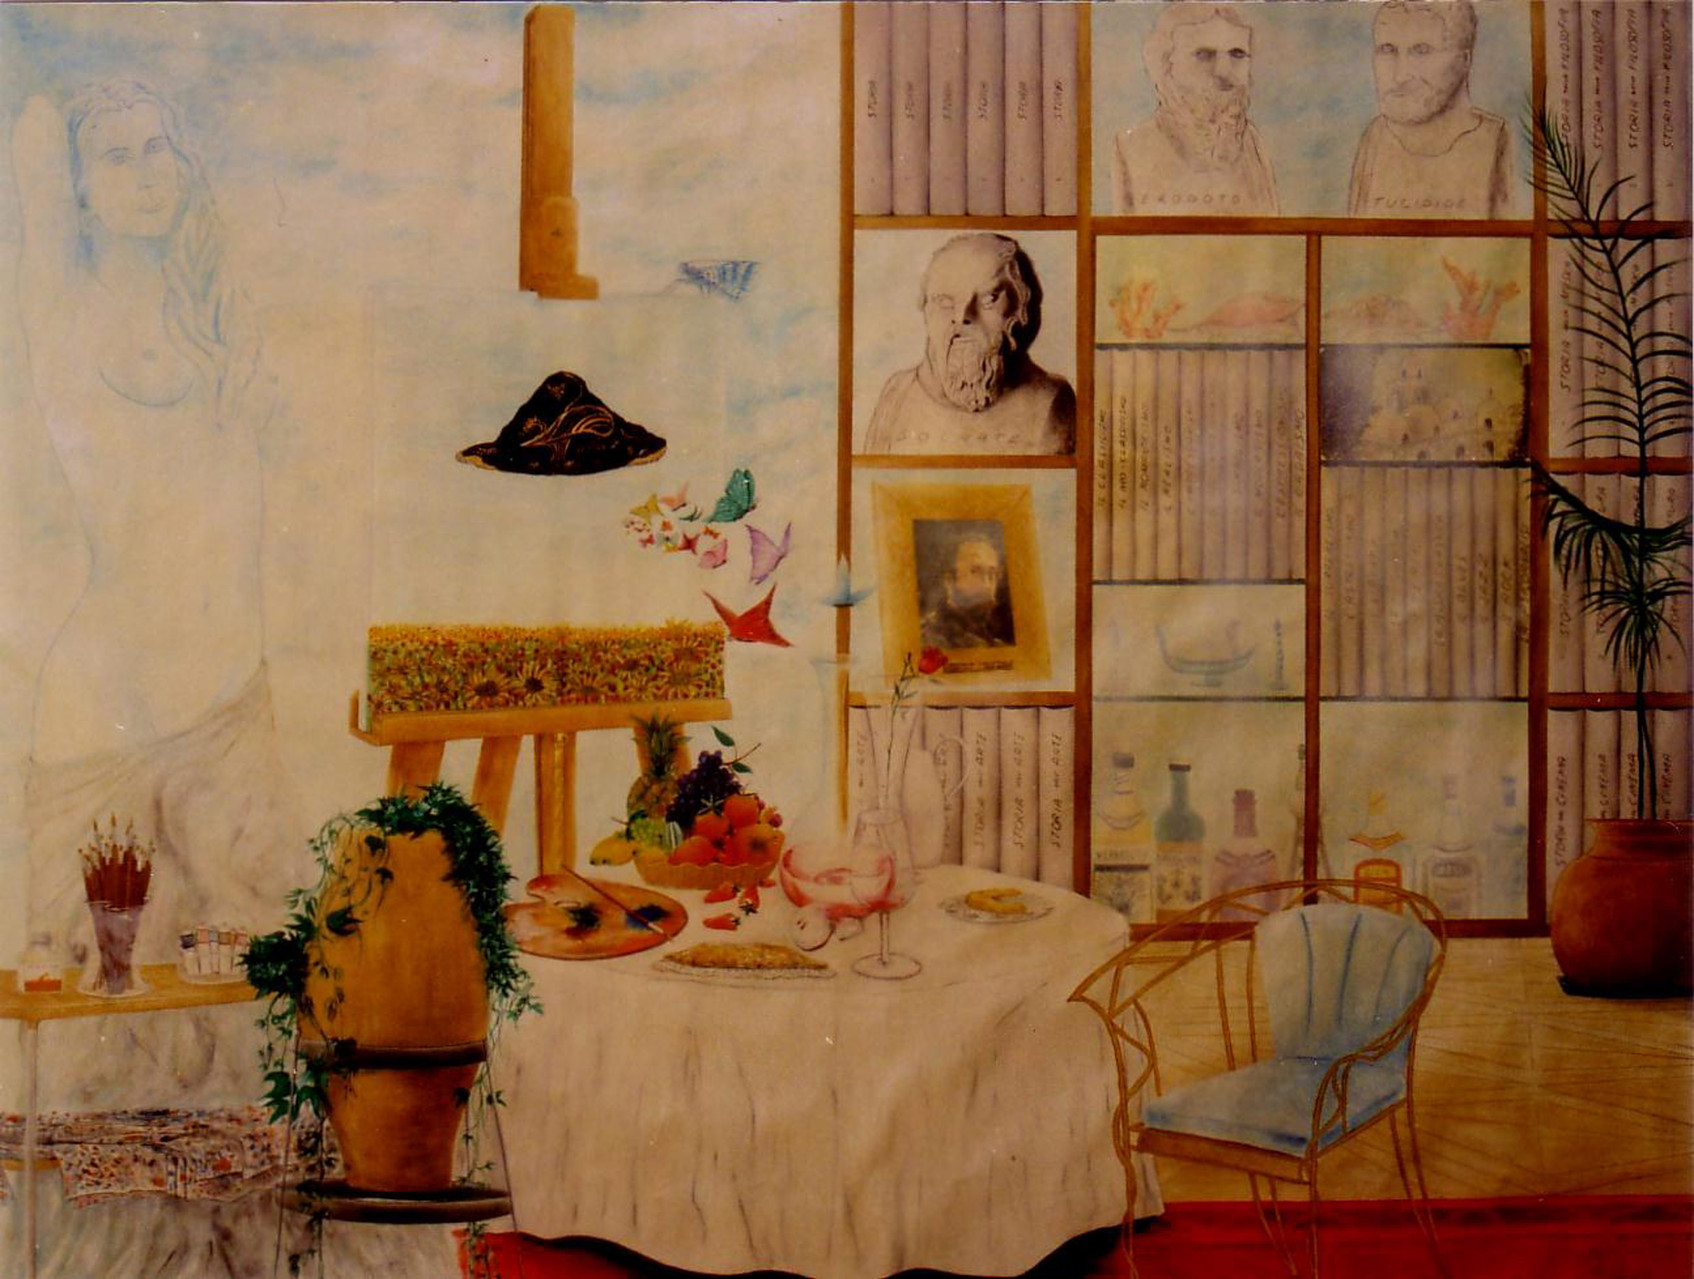 Lo studio dell'artista, 1996, olio su tela, 147 x 197